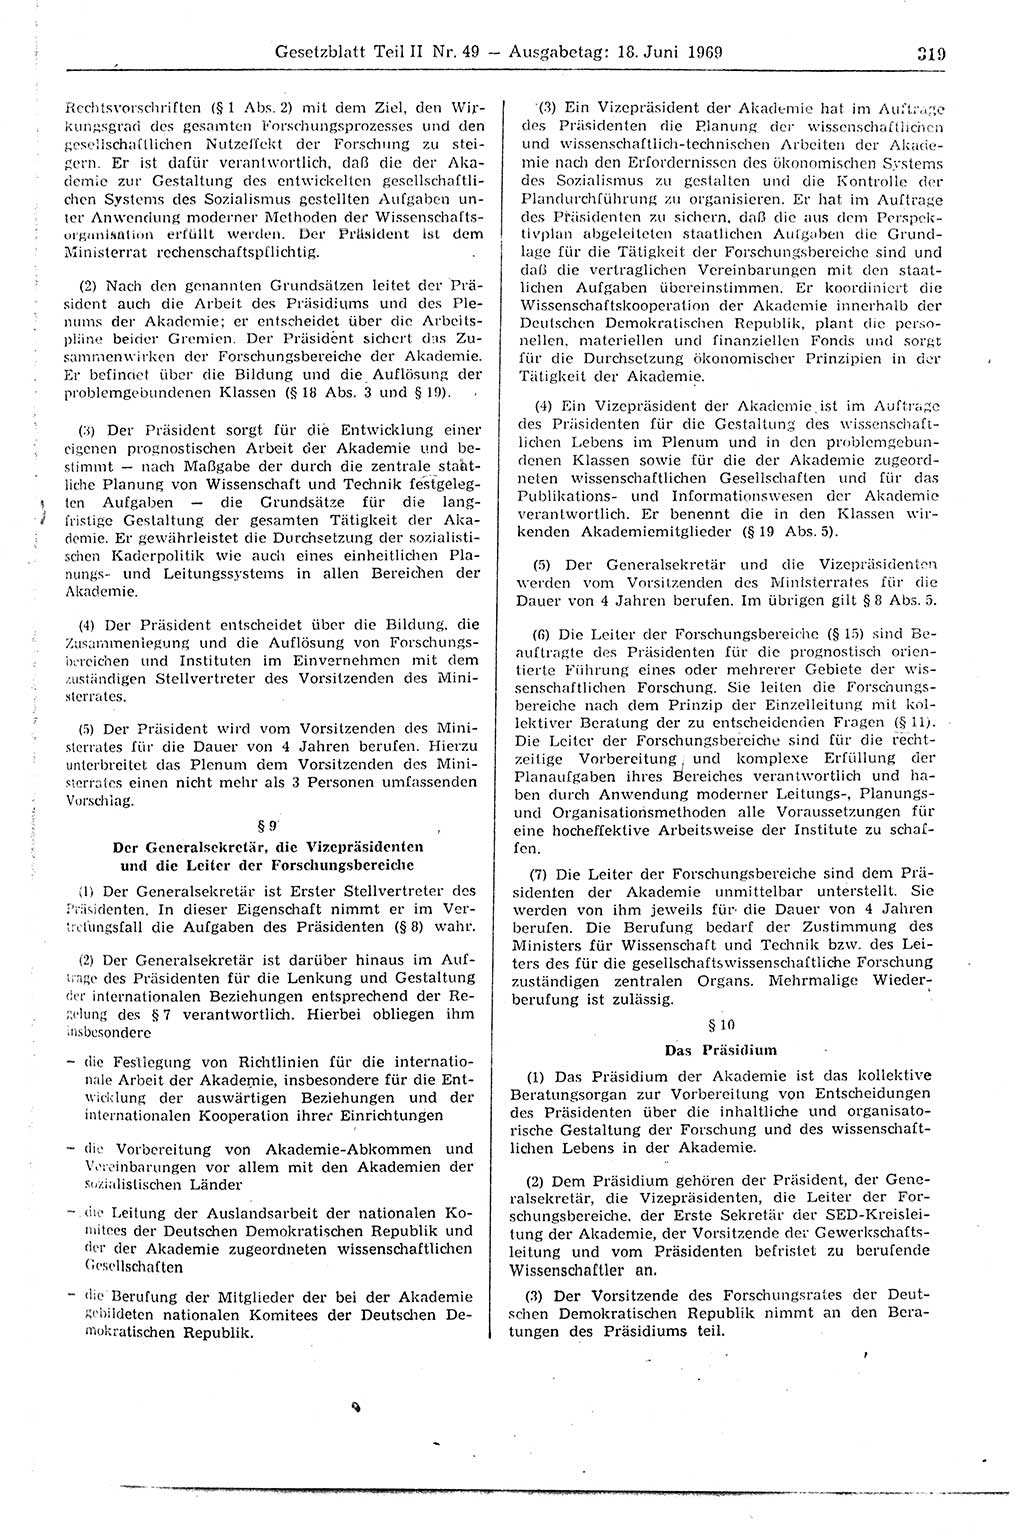 Gesetzblatt (GBl.) der Deutschen Demokratischen Republik (DDR) Teil ⅠⅠ 1969, Seite 319 (GBl. DDR ⅠⅠ 1969, S. 319)